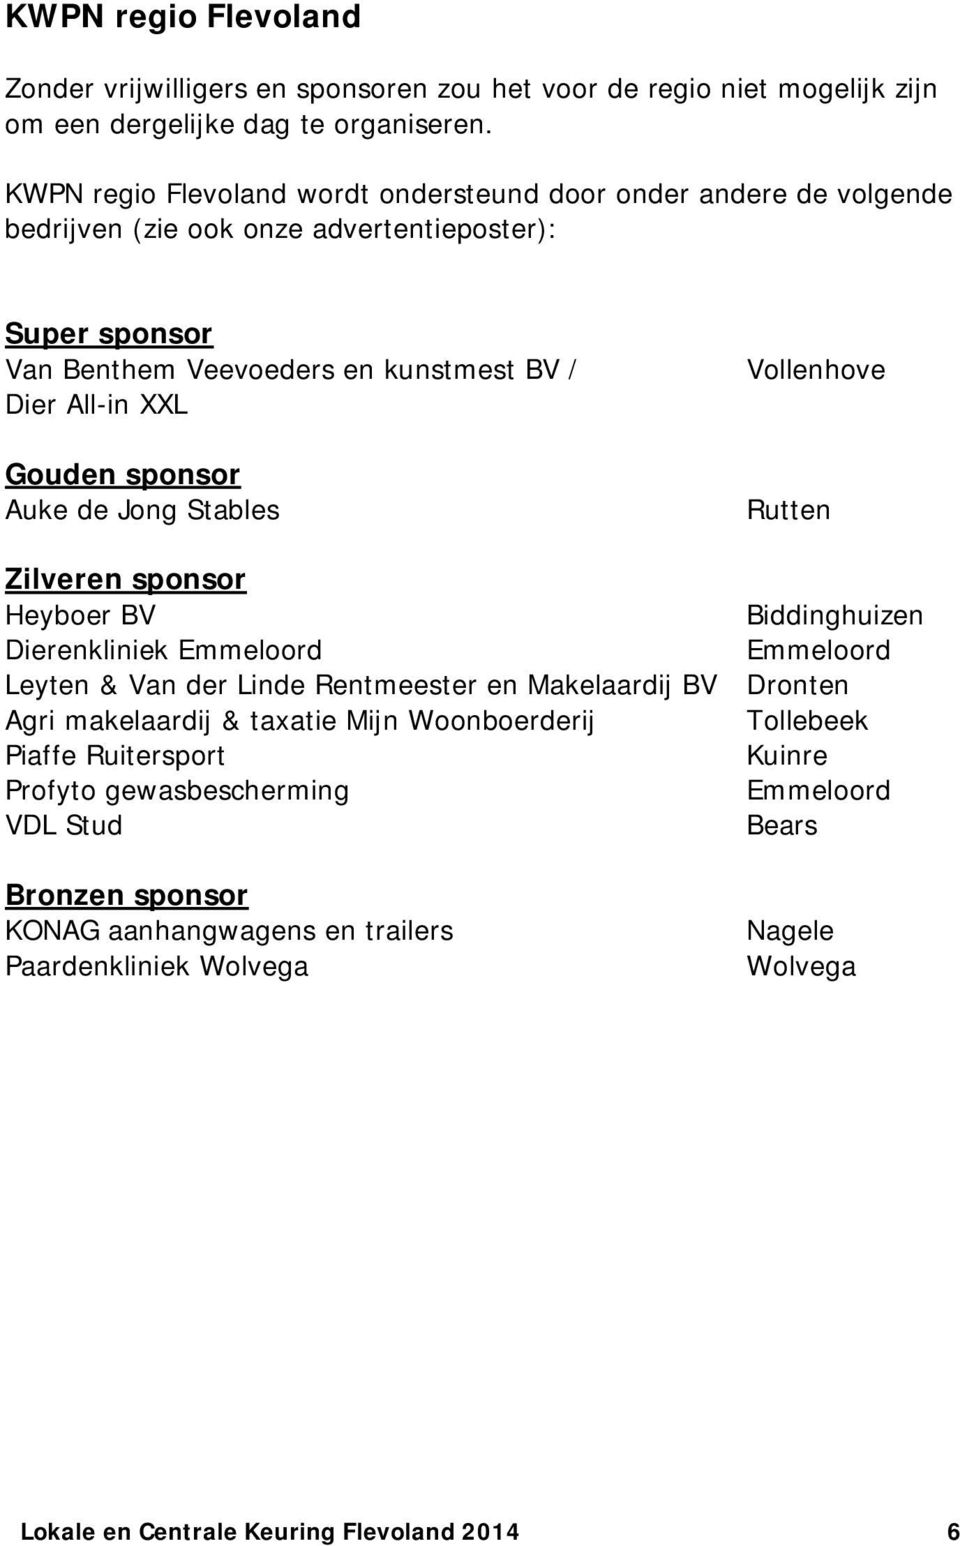 sponsor Auke de Jong Stables Vollenhove Rutten Zilveren sponsor Heyboer BV Biddinghuizen Dierenkliniek Emmeloord Emmeloord Leyten & Van der Linde Rentmeester en Makelaardij BV Dronten Agri